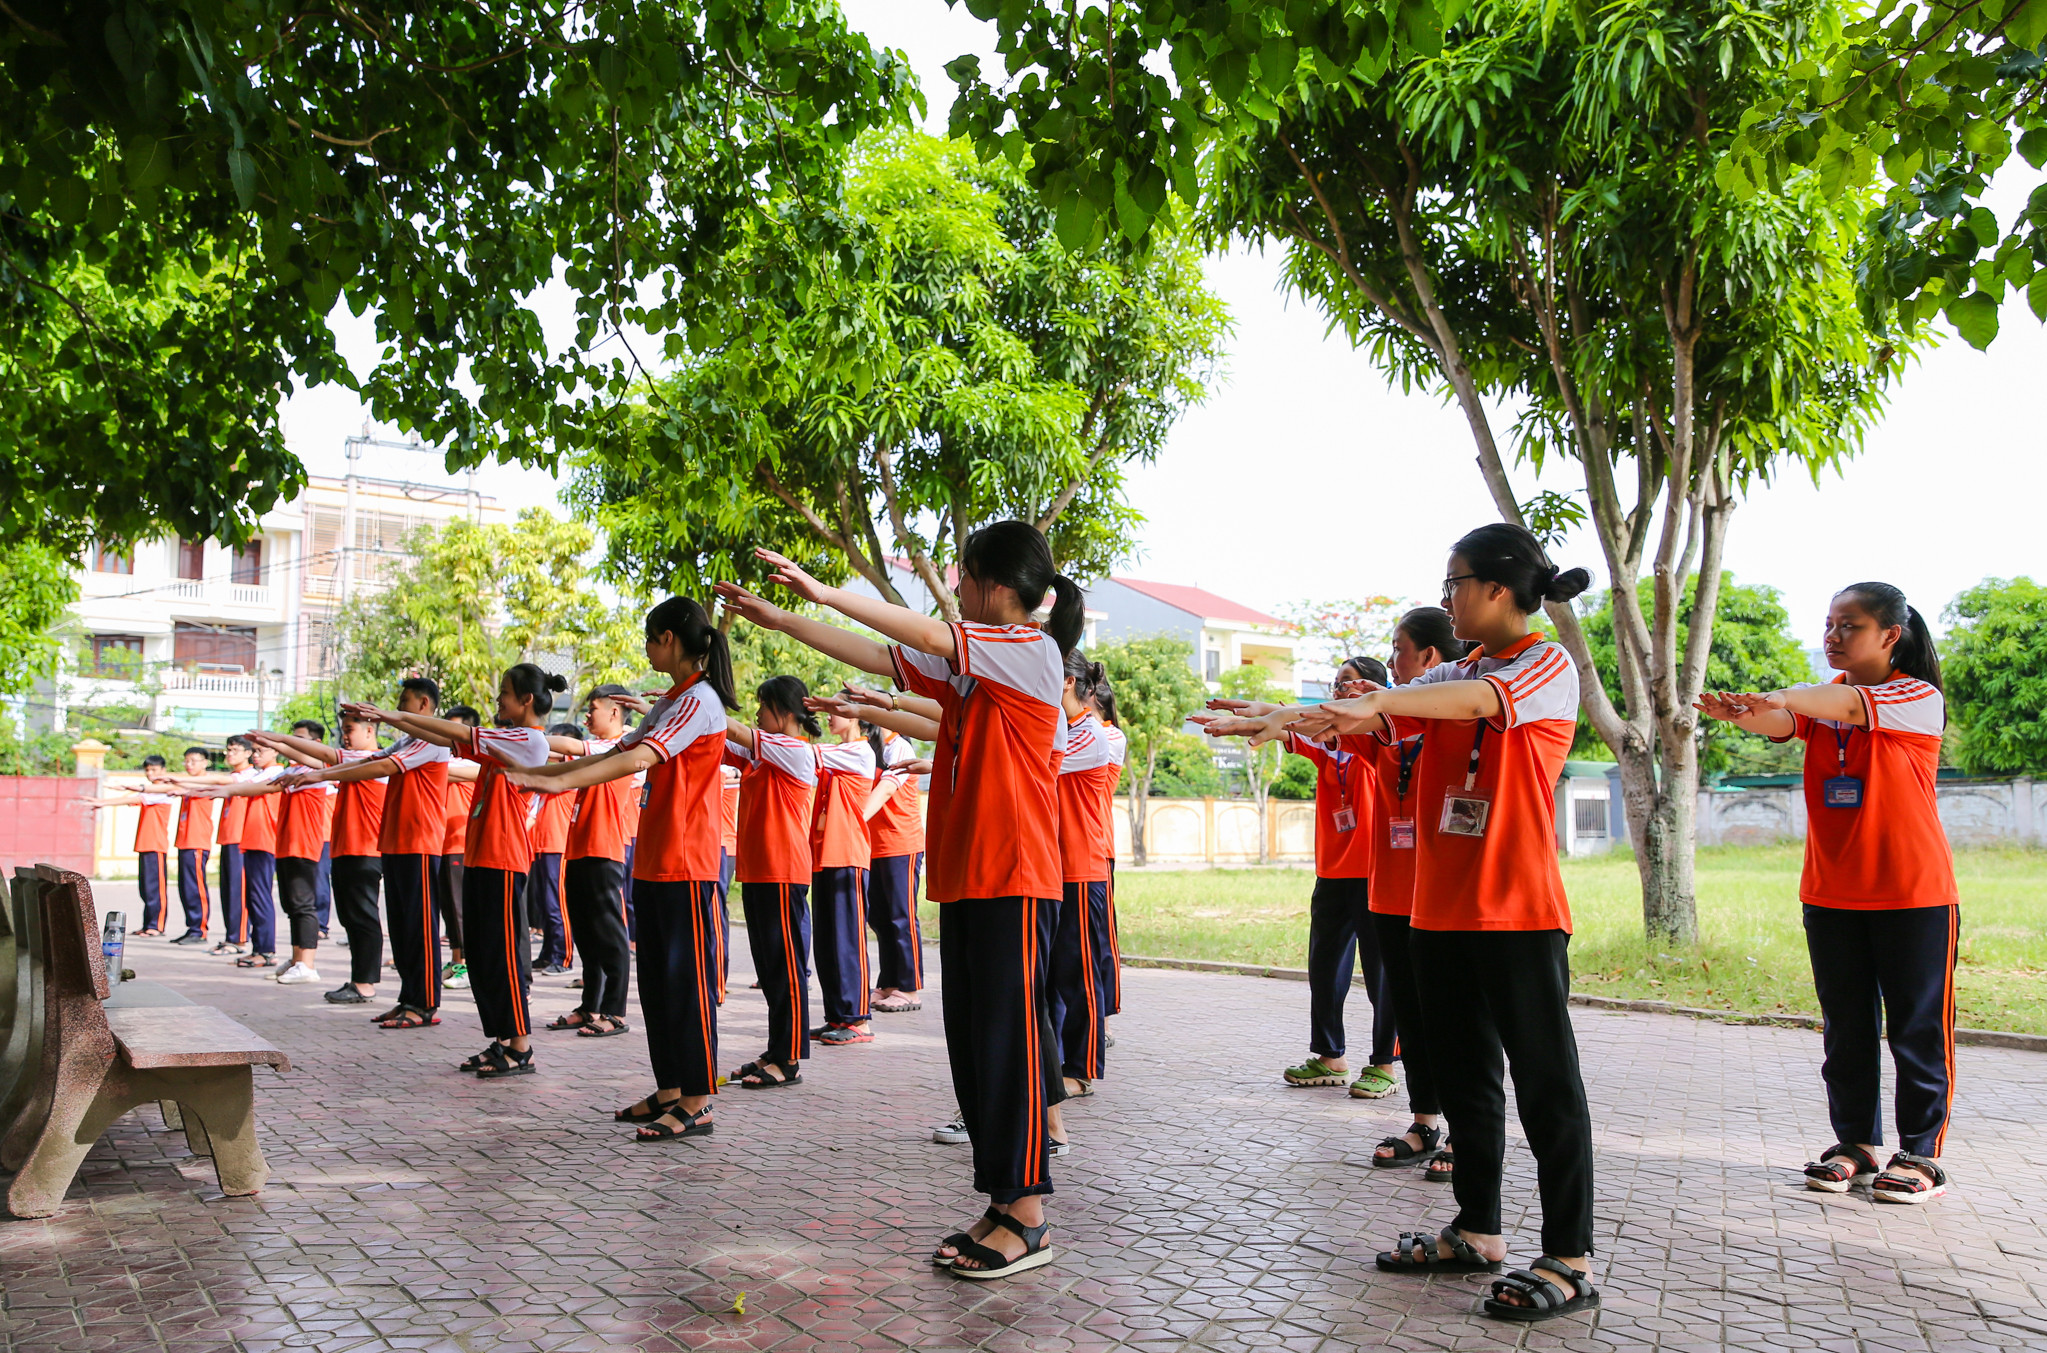 Vì thời tiết rất nóng nên tiết học thể dục của các em học sinh trường THPT Hà Huy Tập được thầy giáo cho học ở dưới các tán cây lớn để tránh nắng cho các em học sinh. Ảnh: Đức Anh